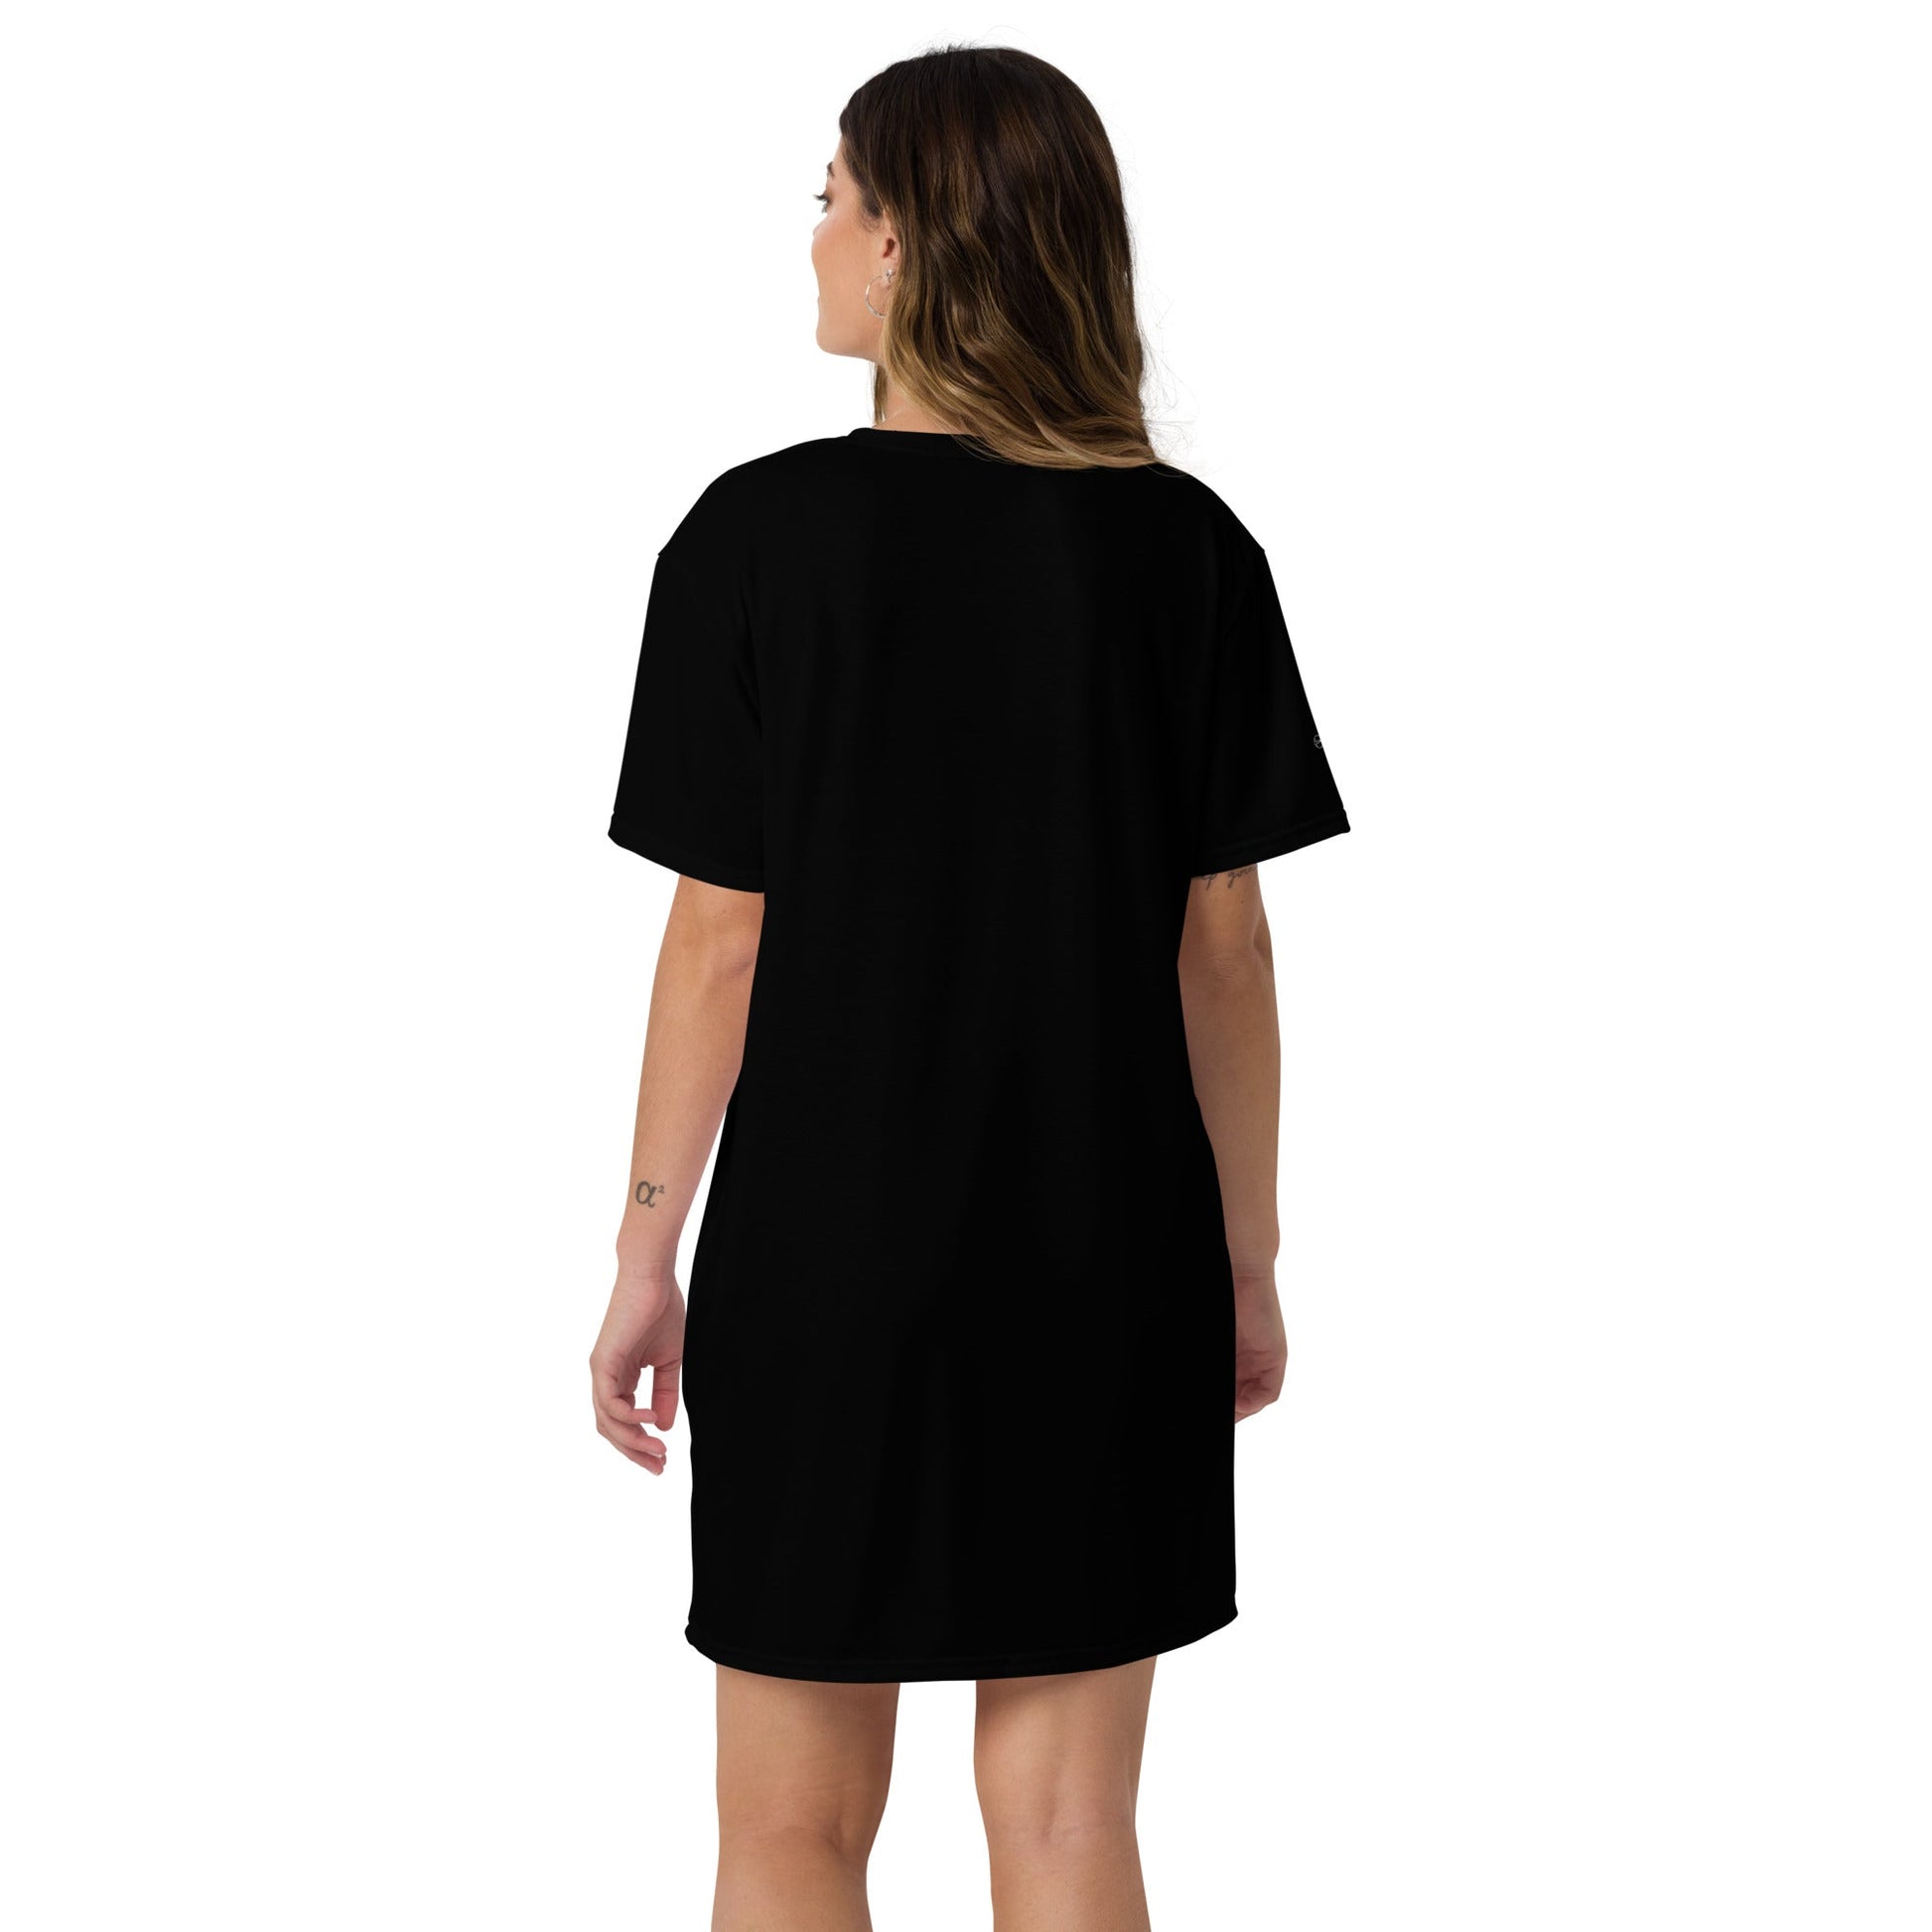 EIFFEL TOWER Women's T-shirt Dress - Bonotee